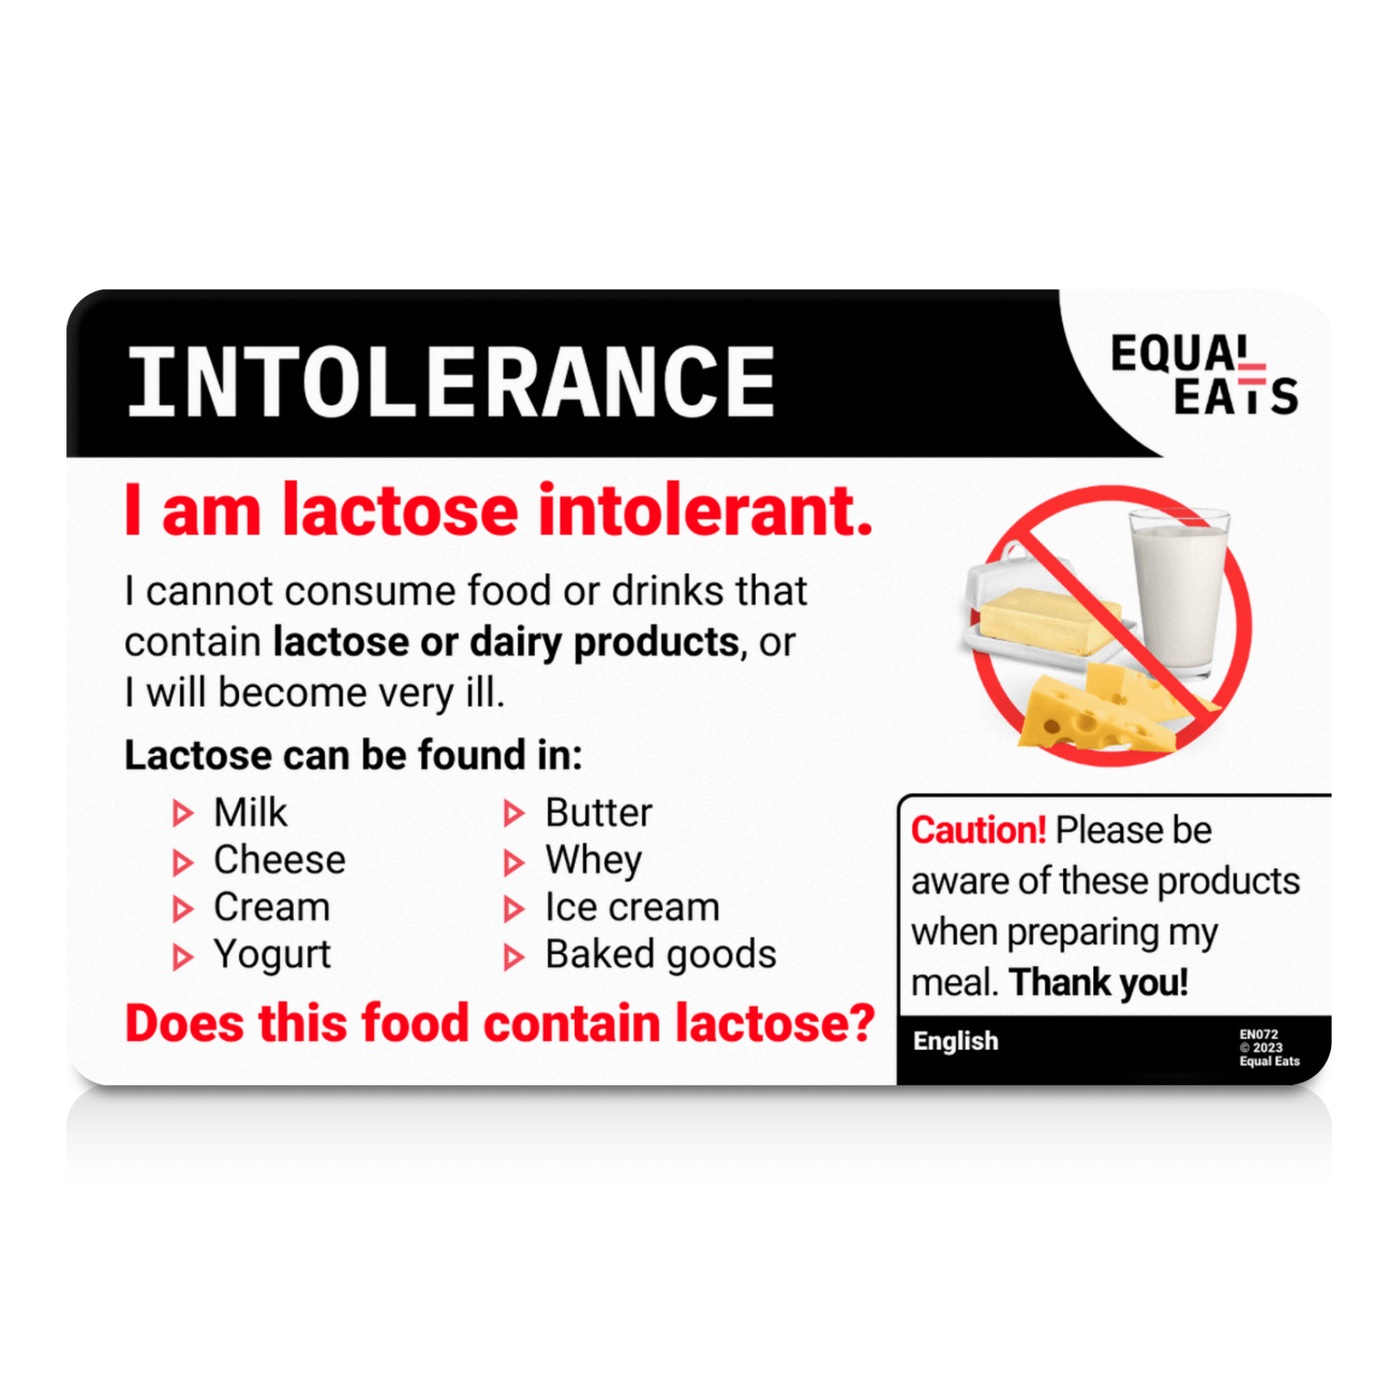 Finnish Lactose Intolerance Card